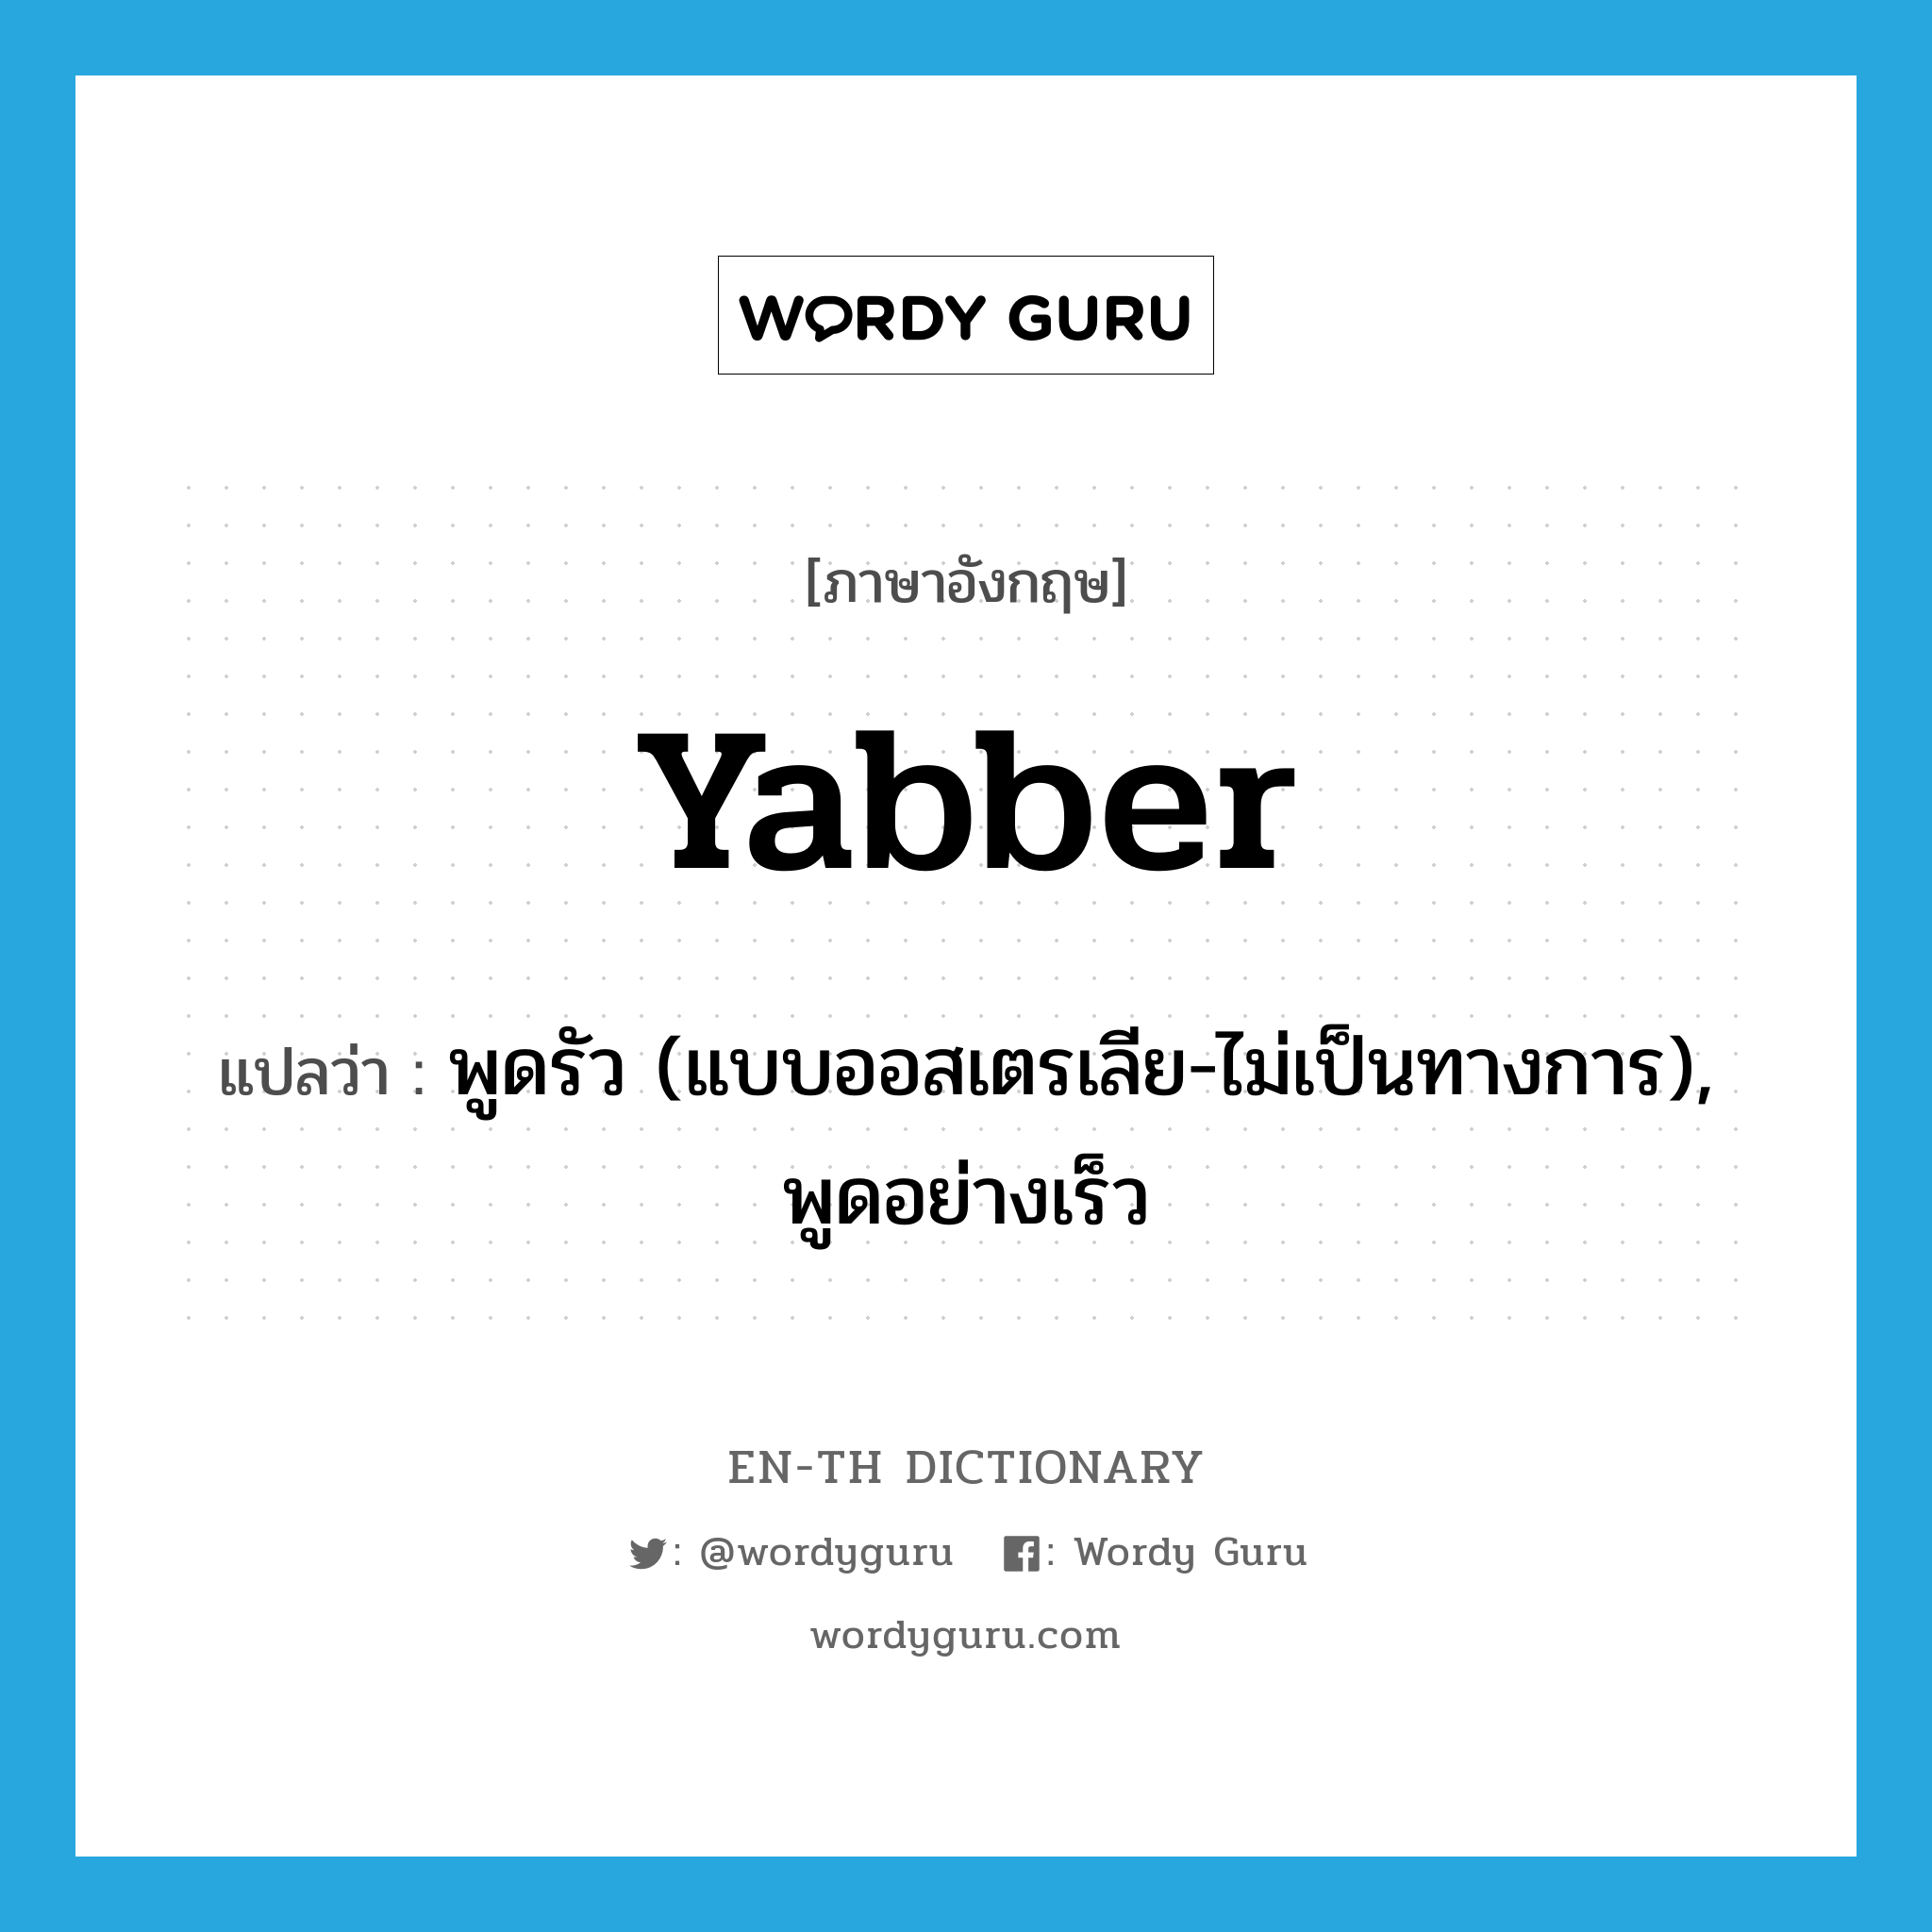 พูดรัว (แบบออสเตรเลีย-ไม่เป็นทางการ), พูดอย่างเร็ว ภาษาอังกฤษ?, คำศัพท์ภาษาอังกฤษ พูดรัว (แบบออสเตรเลีย-ไม่เป็นทางการ), พูดอย่างเร็ว แปลว่า yabber ประเภท VI หมวด VI